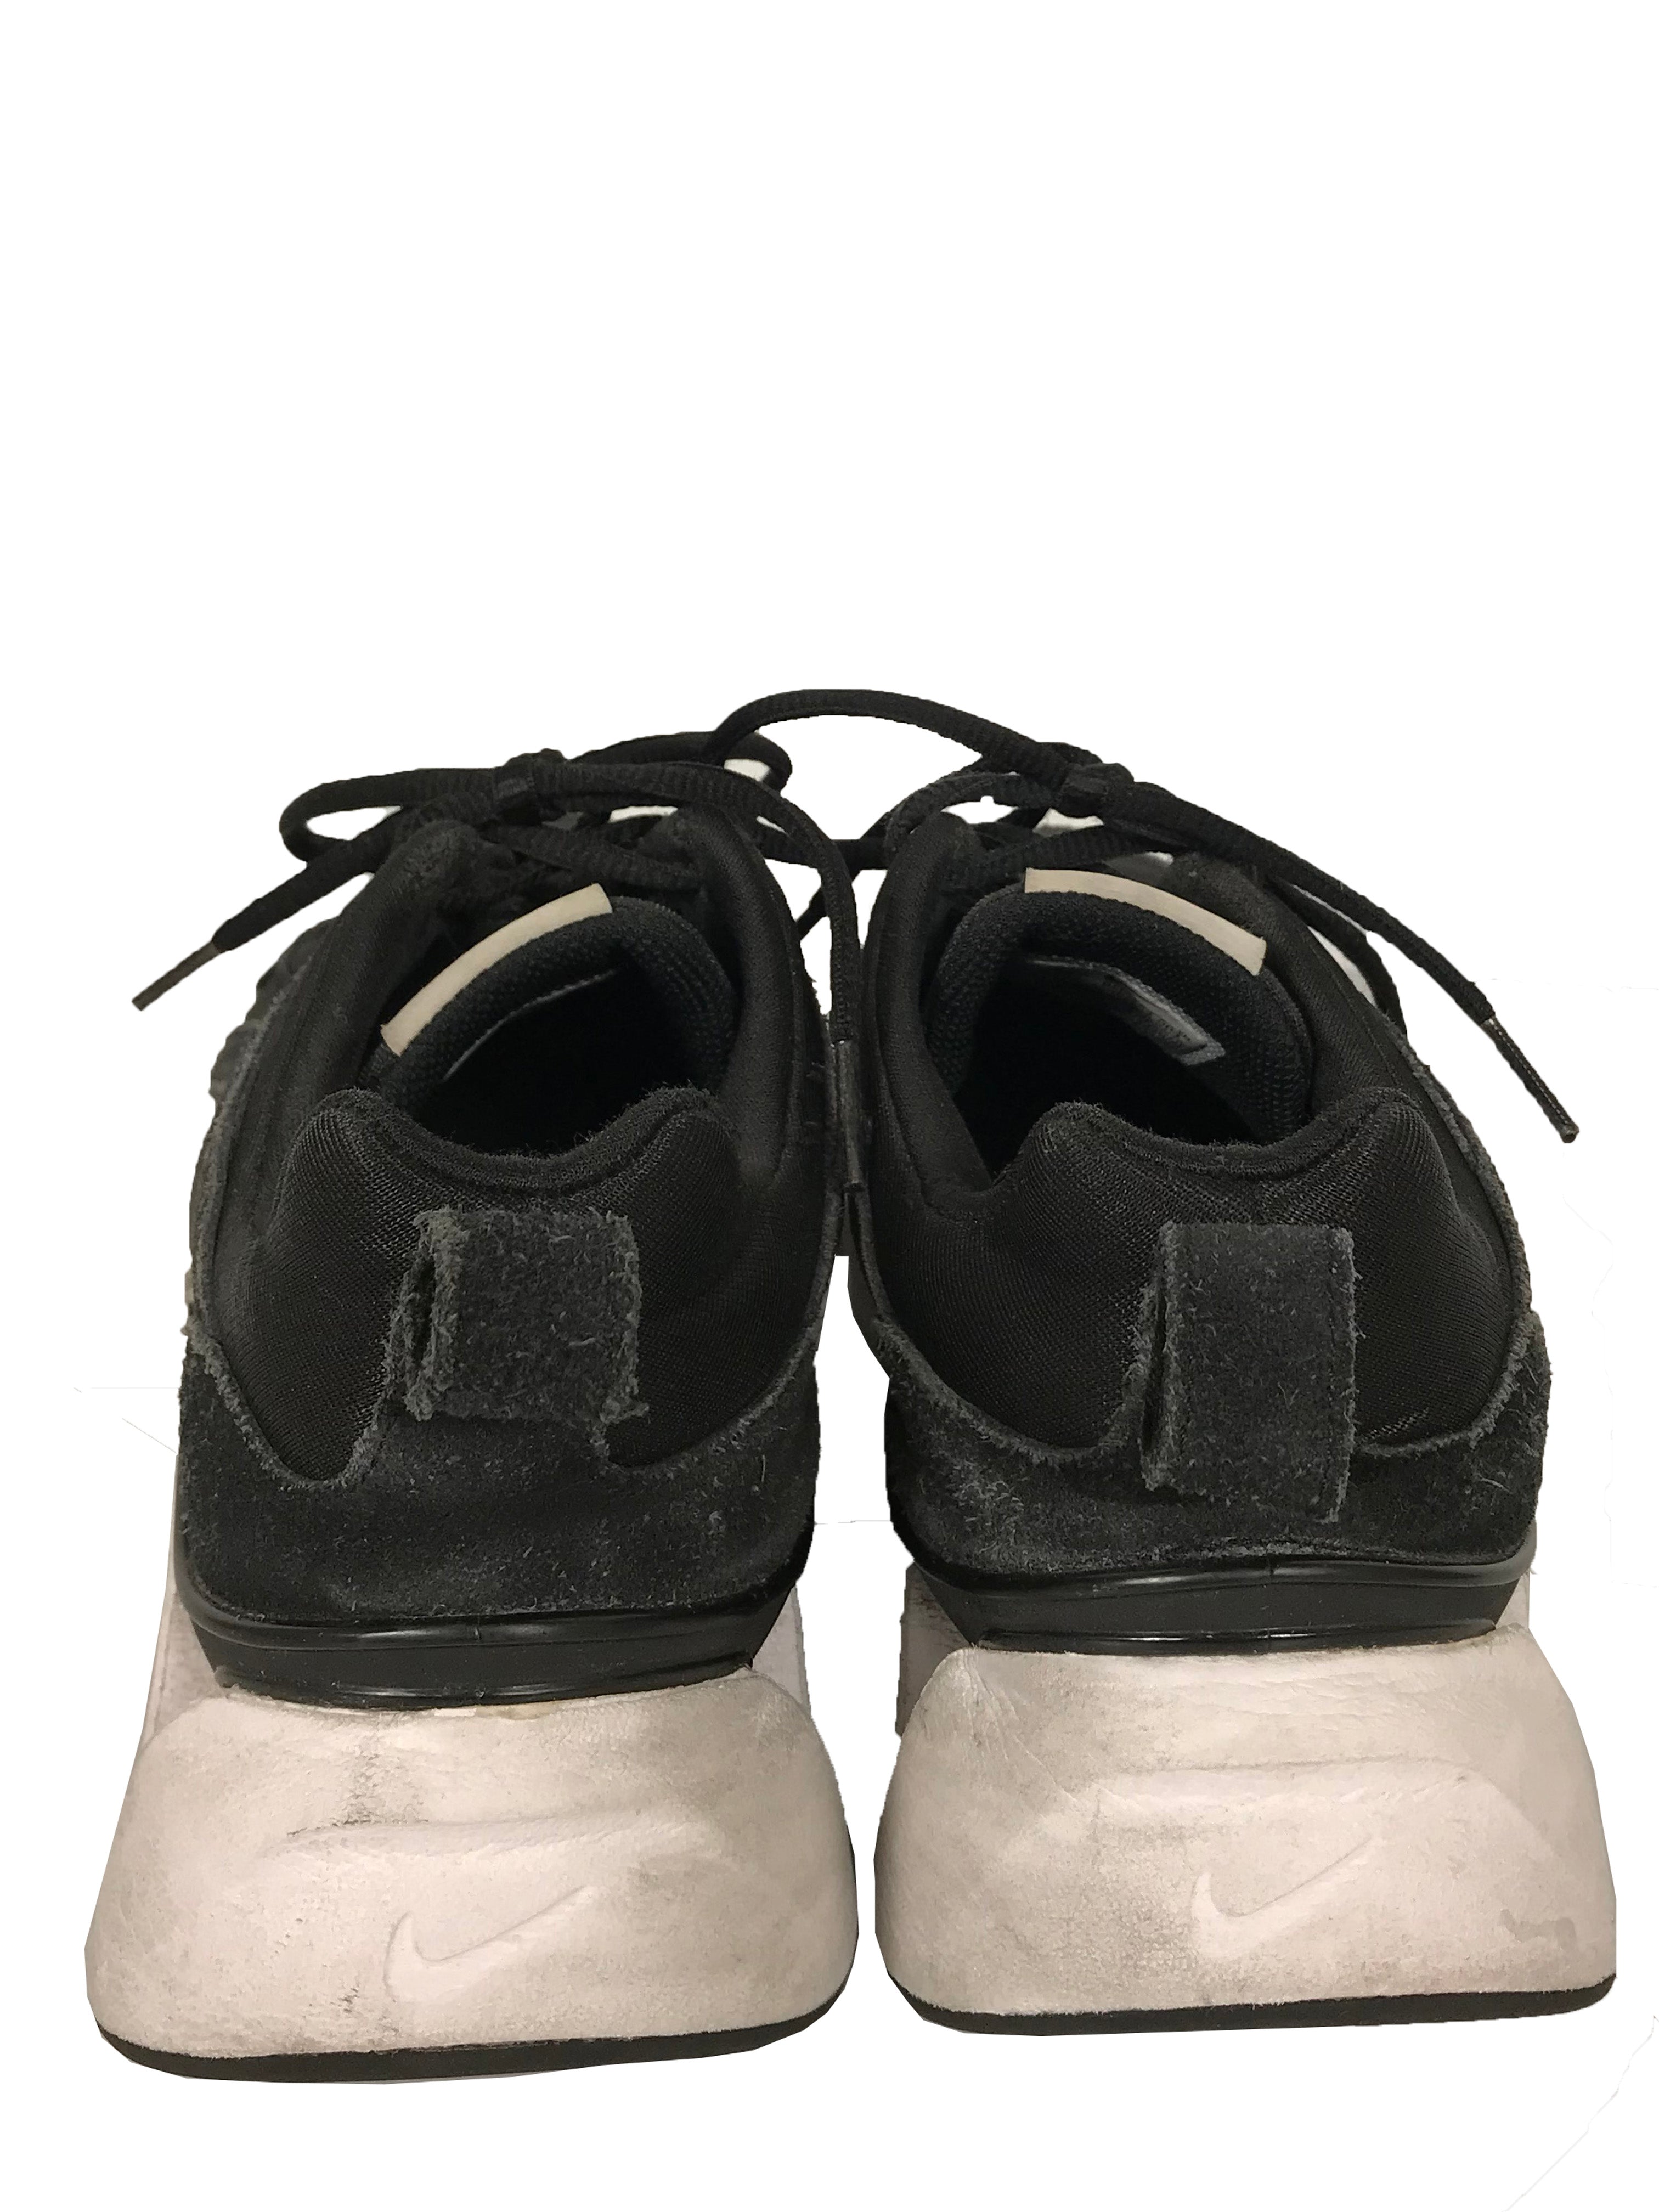 Nike Black & White RYZ 365 Shoes Women's Size 9